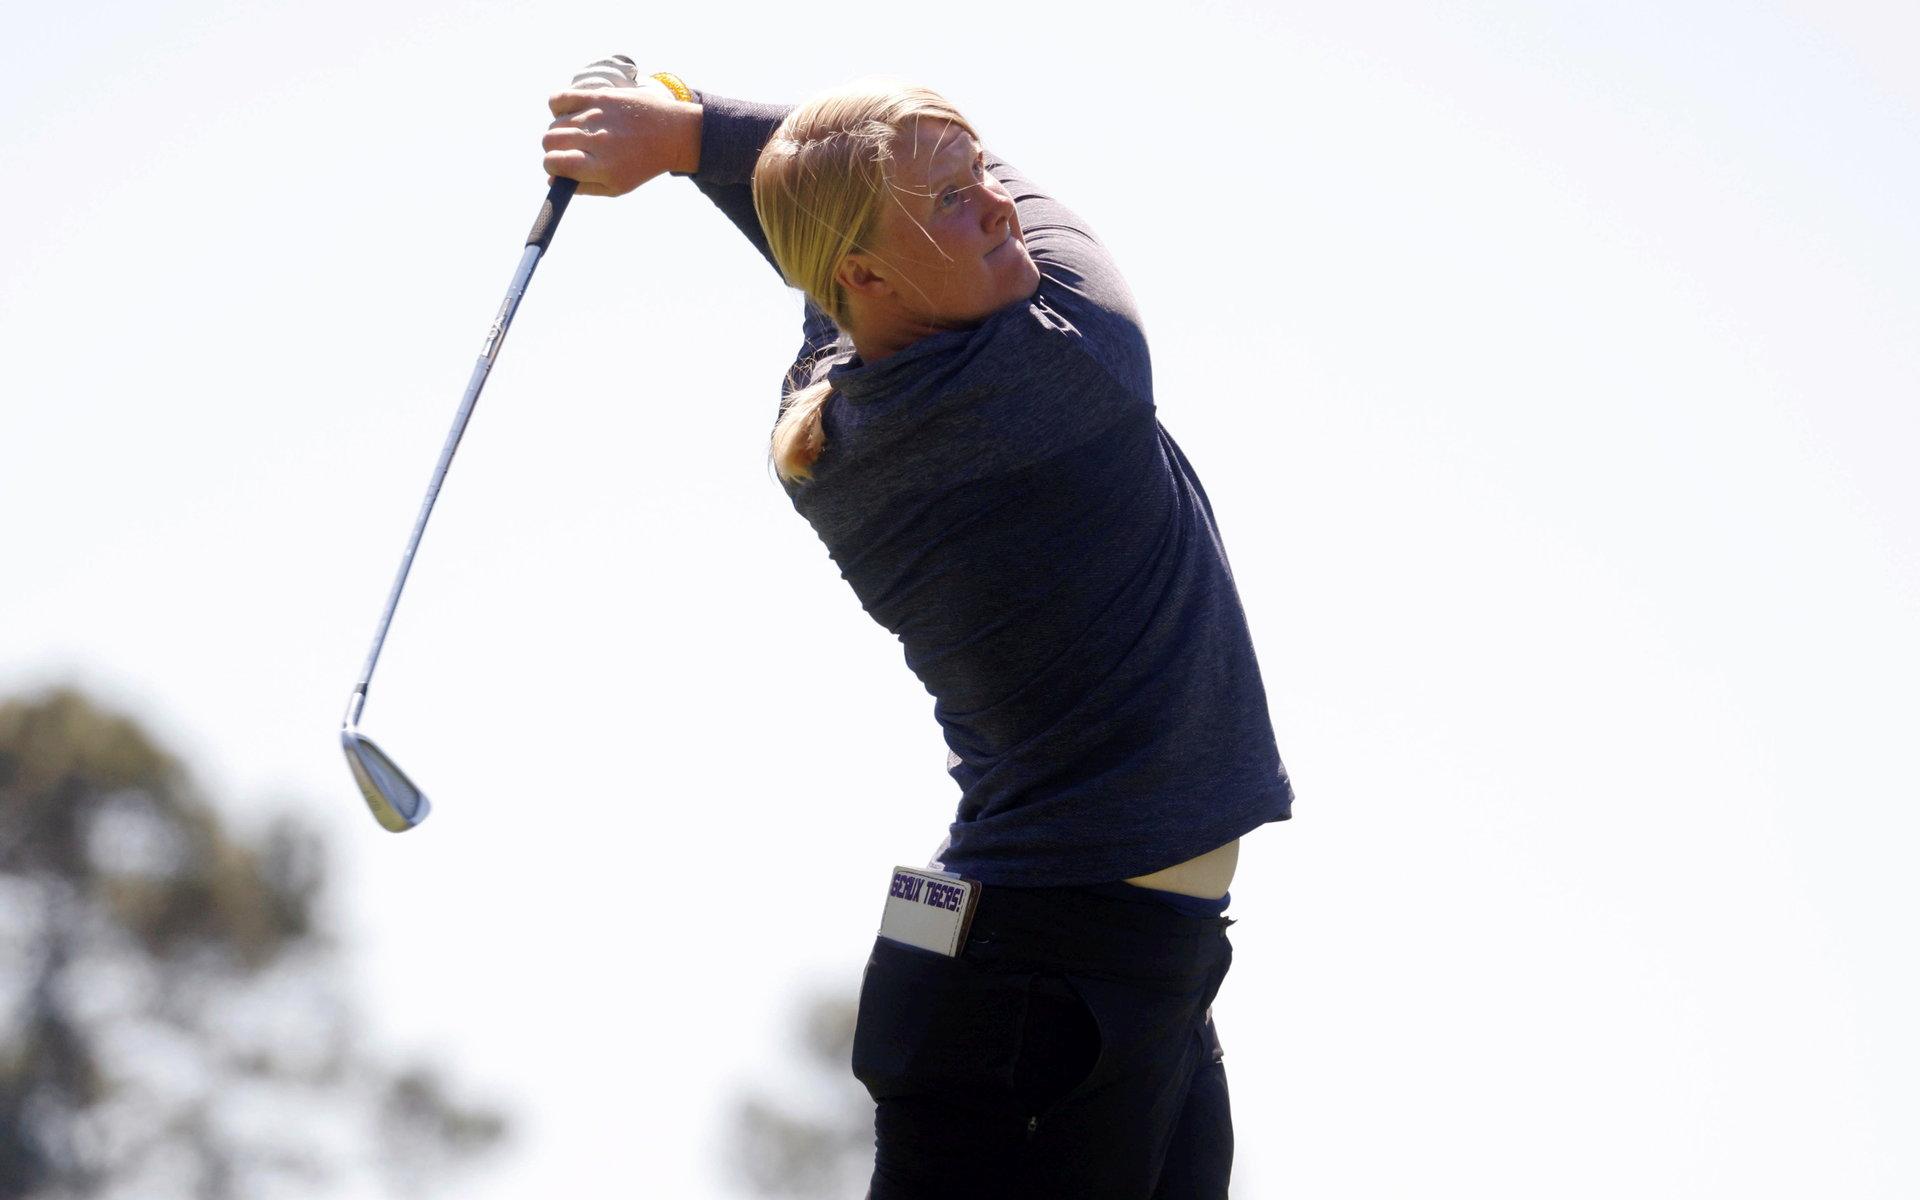 Ringenäs GK:s Ingrid Lindblad är ett av svensk golfsports största framtidslöften och har under 2021 både blivit europamästare för amatörer och fått spela mot proffsen i British Open.